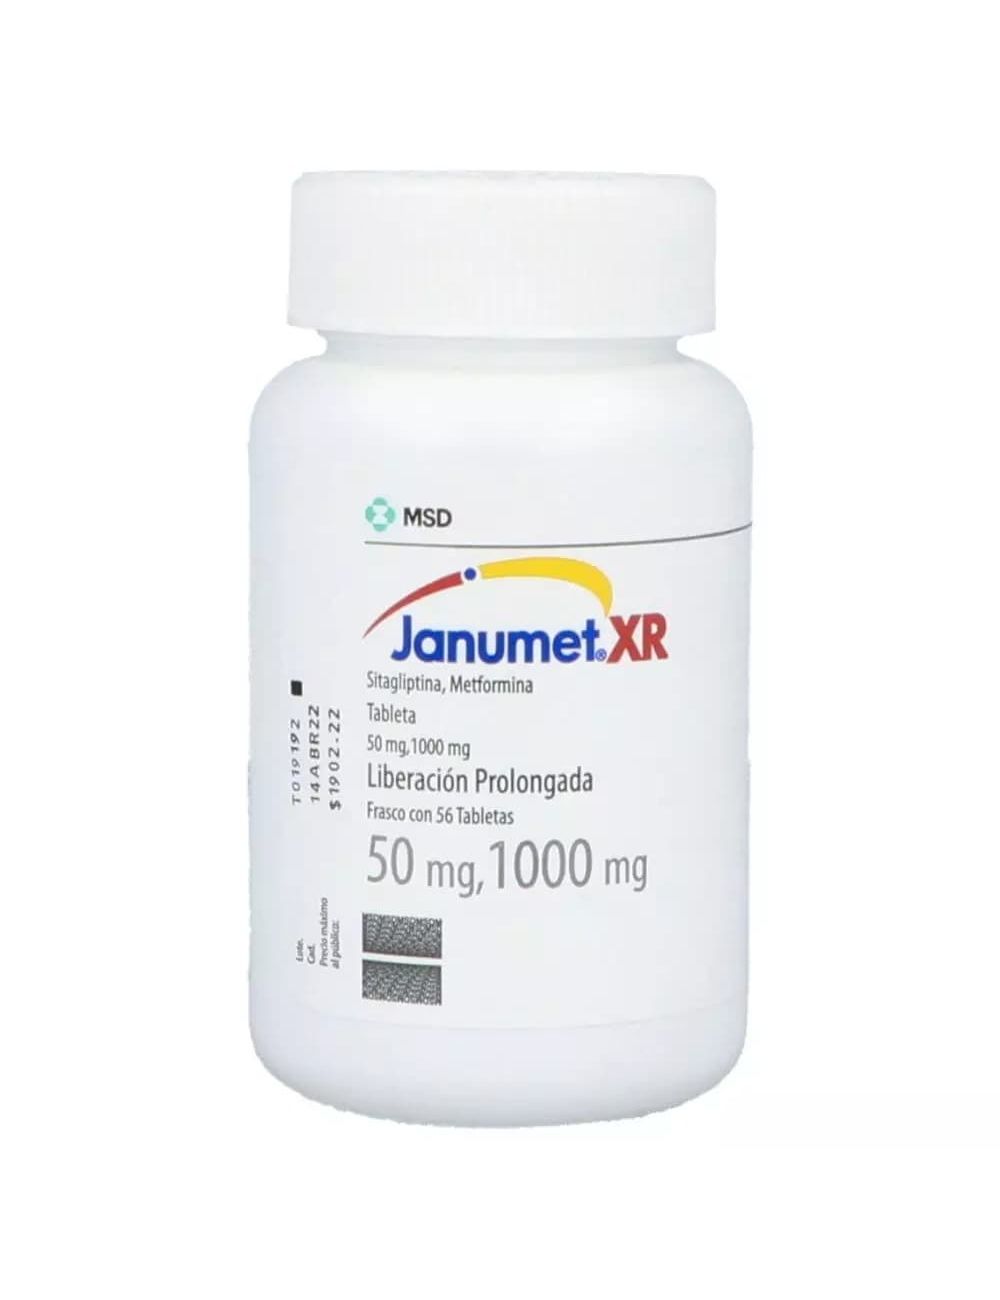 Janumet XR 50 / 1000 mg Frasco con 56 Tabletas